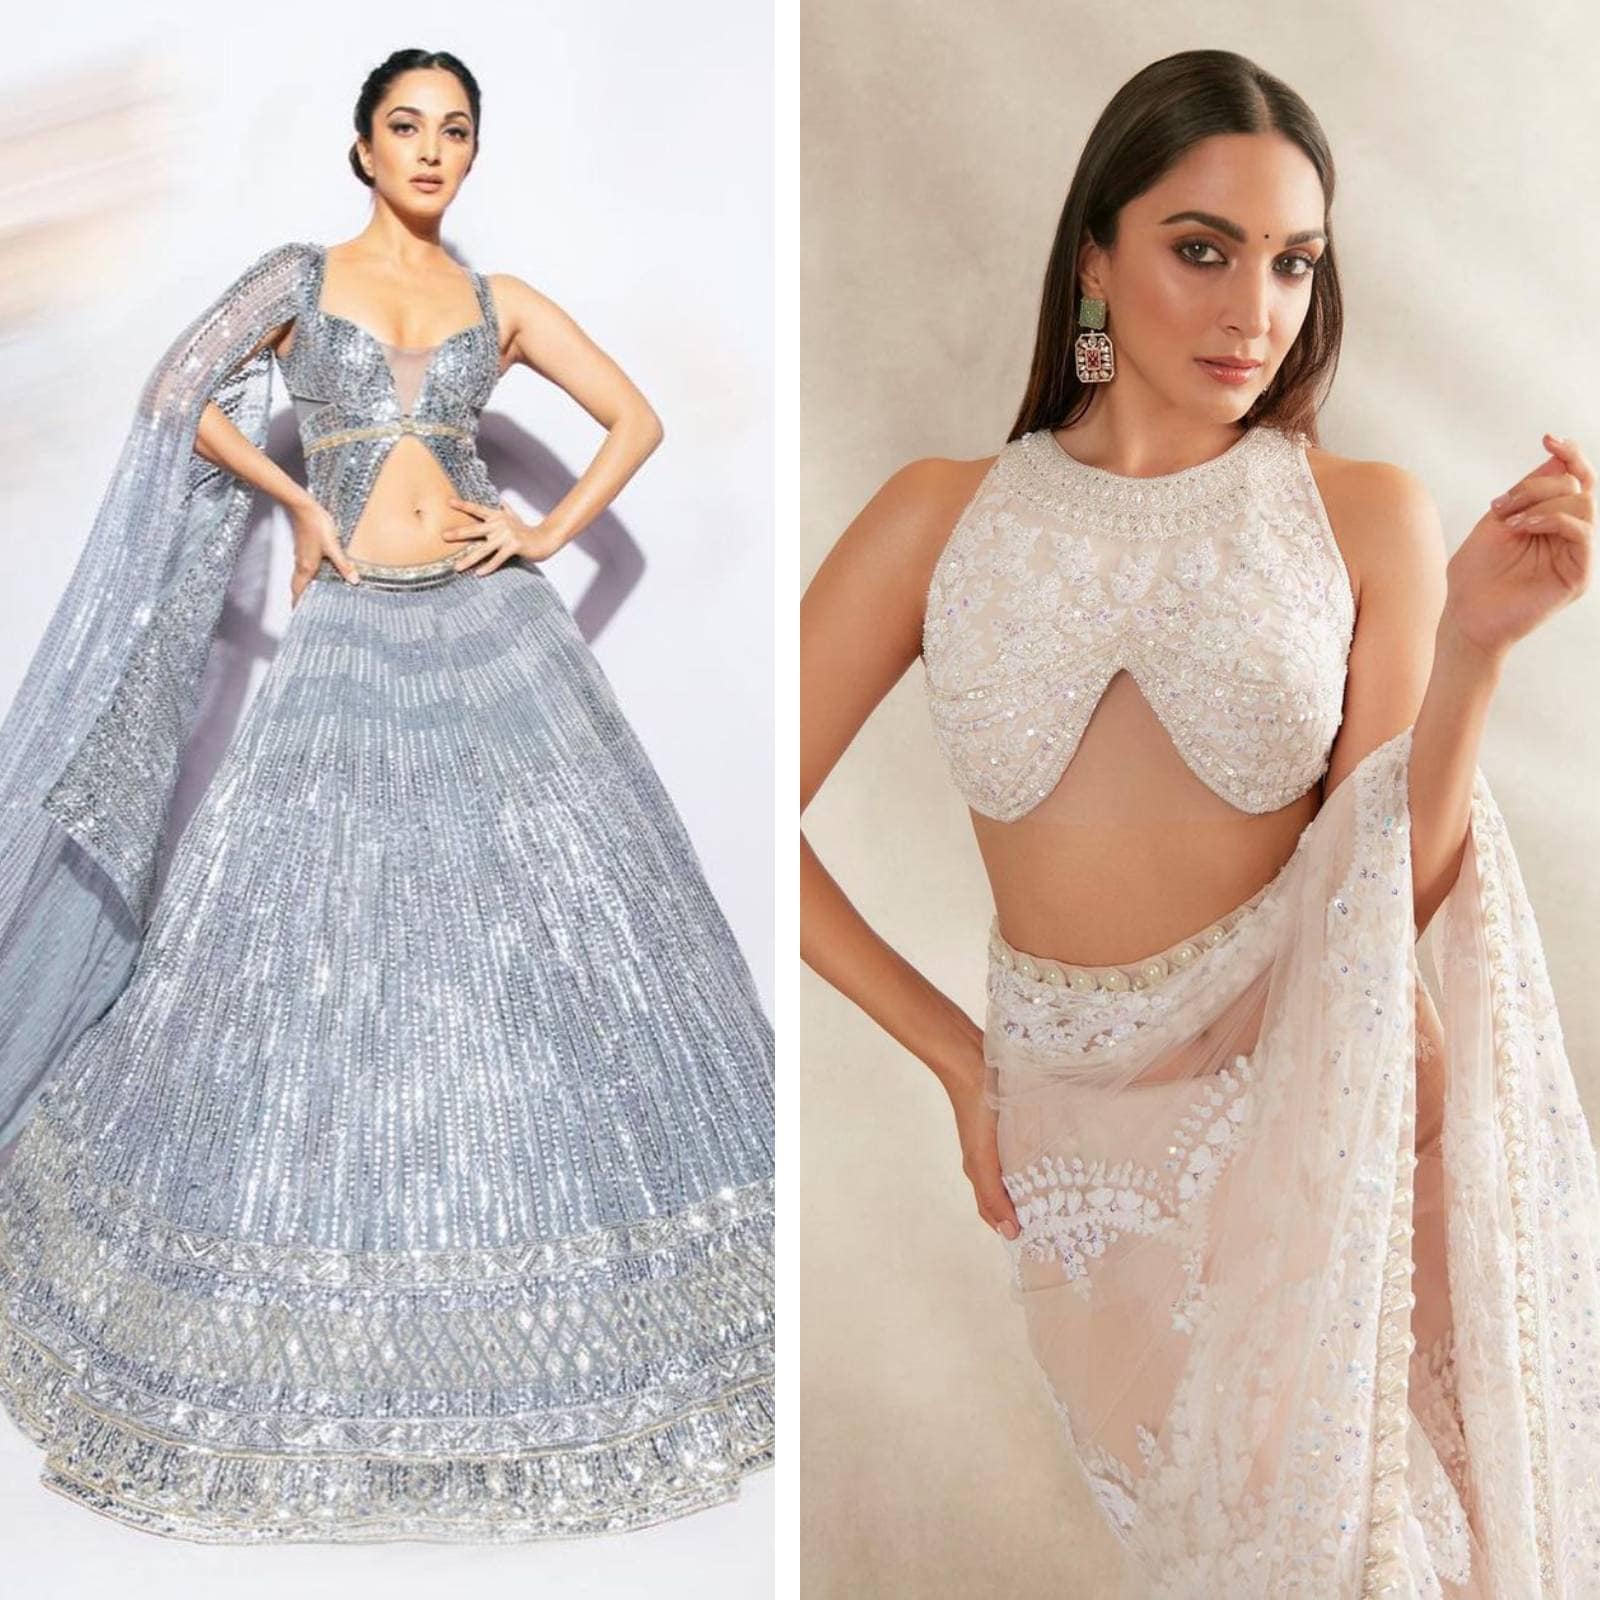 Manish Malhotra # cocktail look # fusion wear gown # | Indian fashion,  Lakme fashion week, Manish malhotra designs